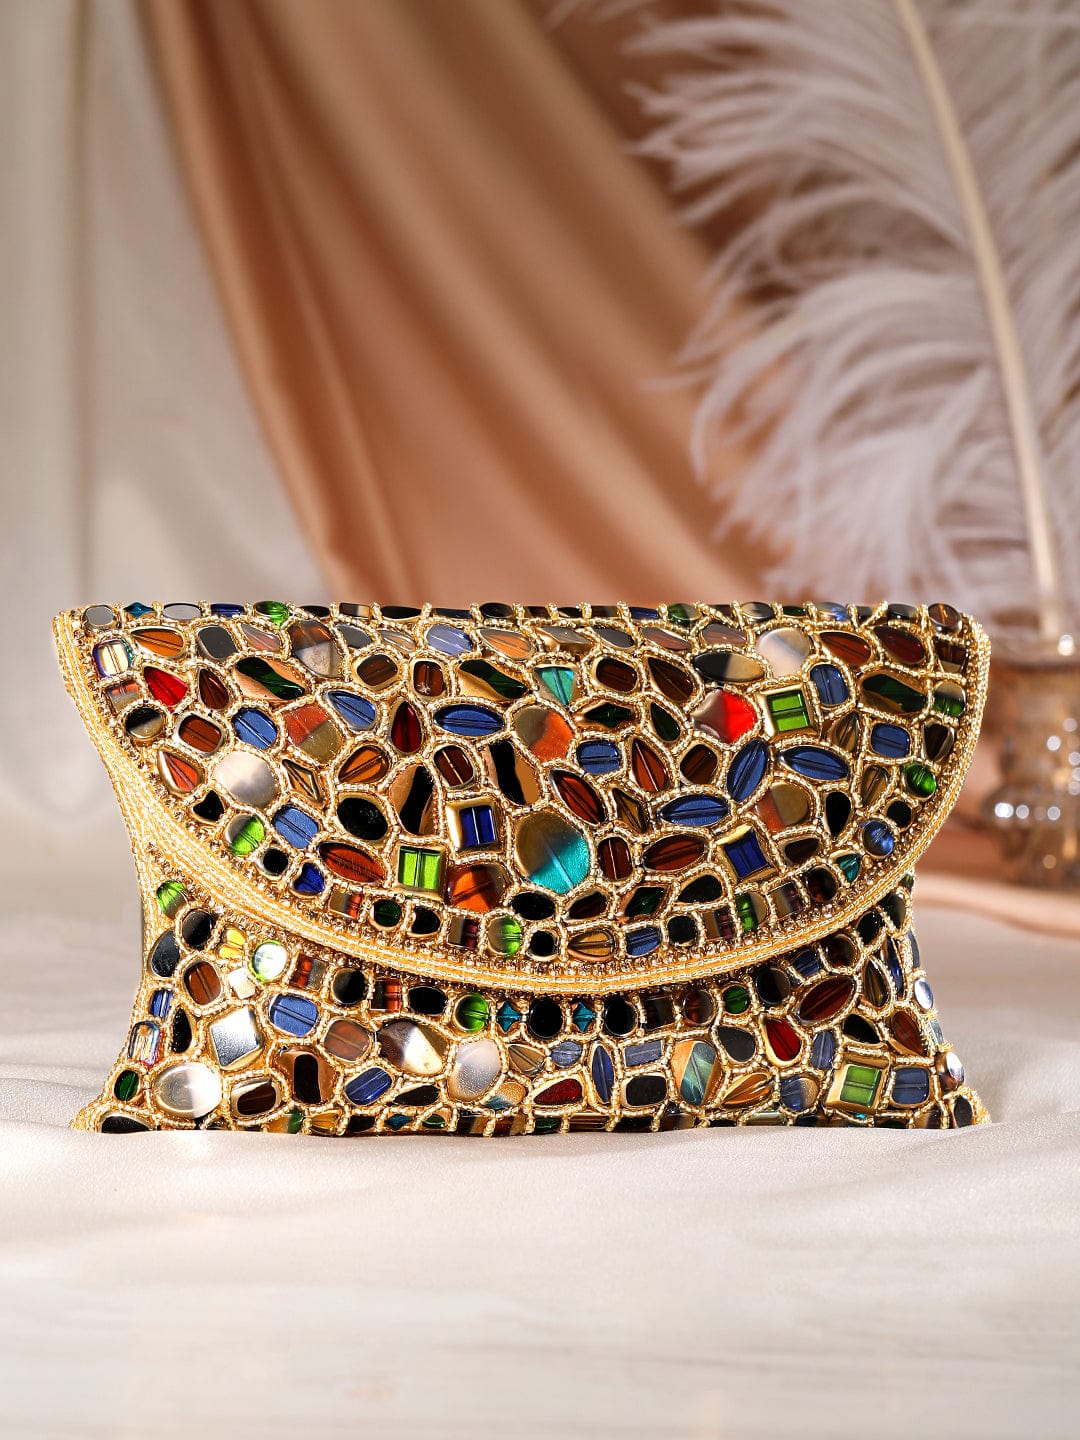 Light Gold Floral Crystal Bag | Pure Crystal Handwork | Premium Quality Bag | Party Bridal Wedding Bag | Elegant Evening Bag / Clutch Bag